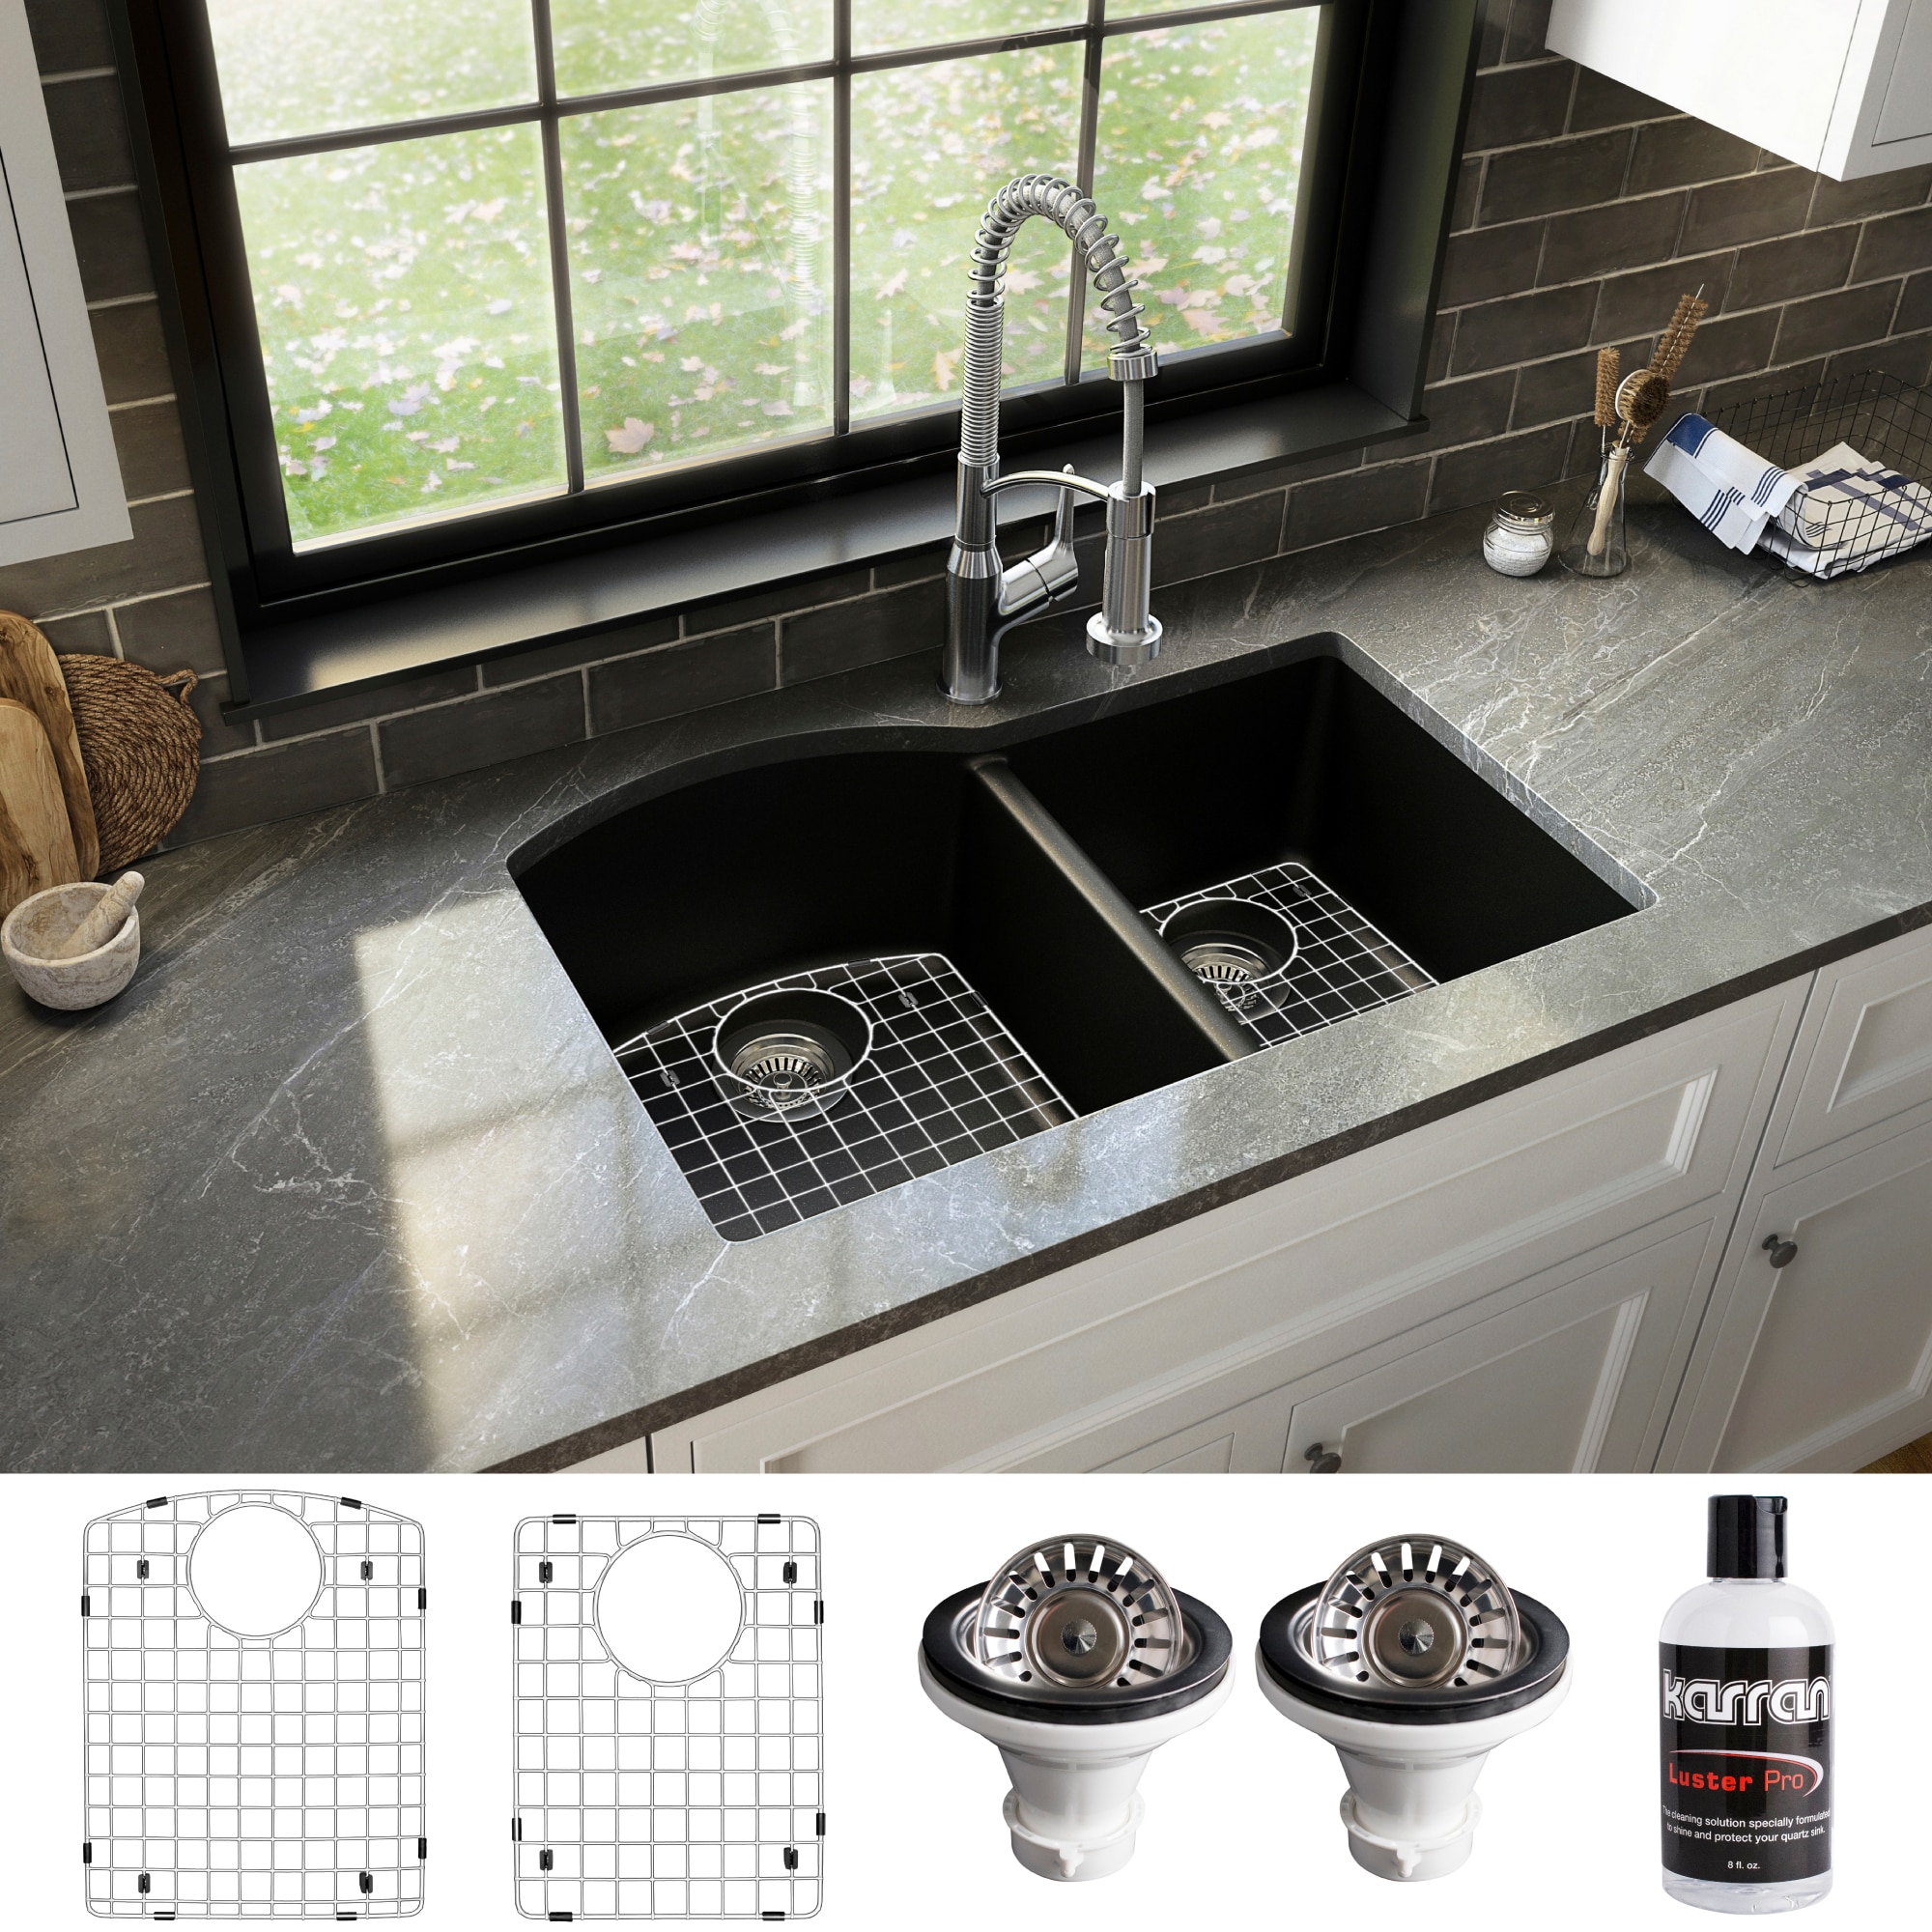 Black Casement Windows Above Kitchen Sink Complement Dark-Colored Island